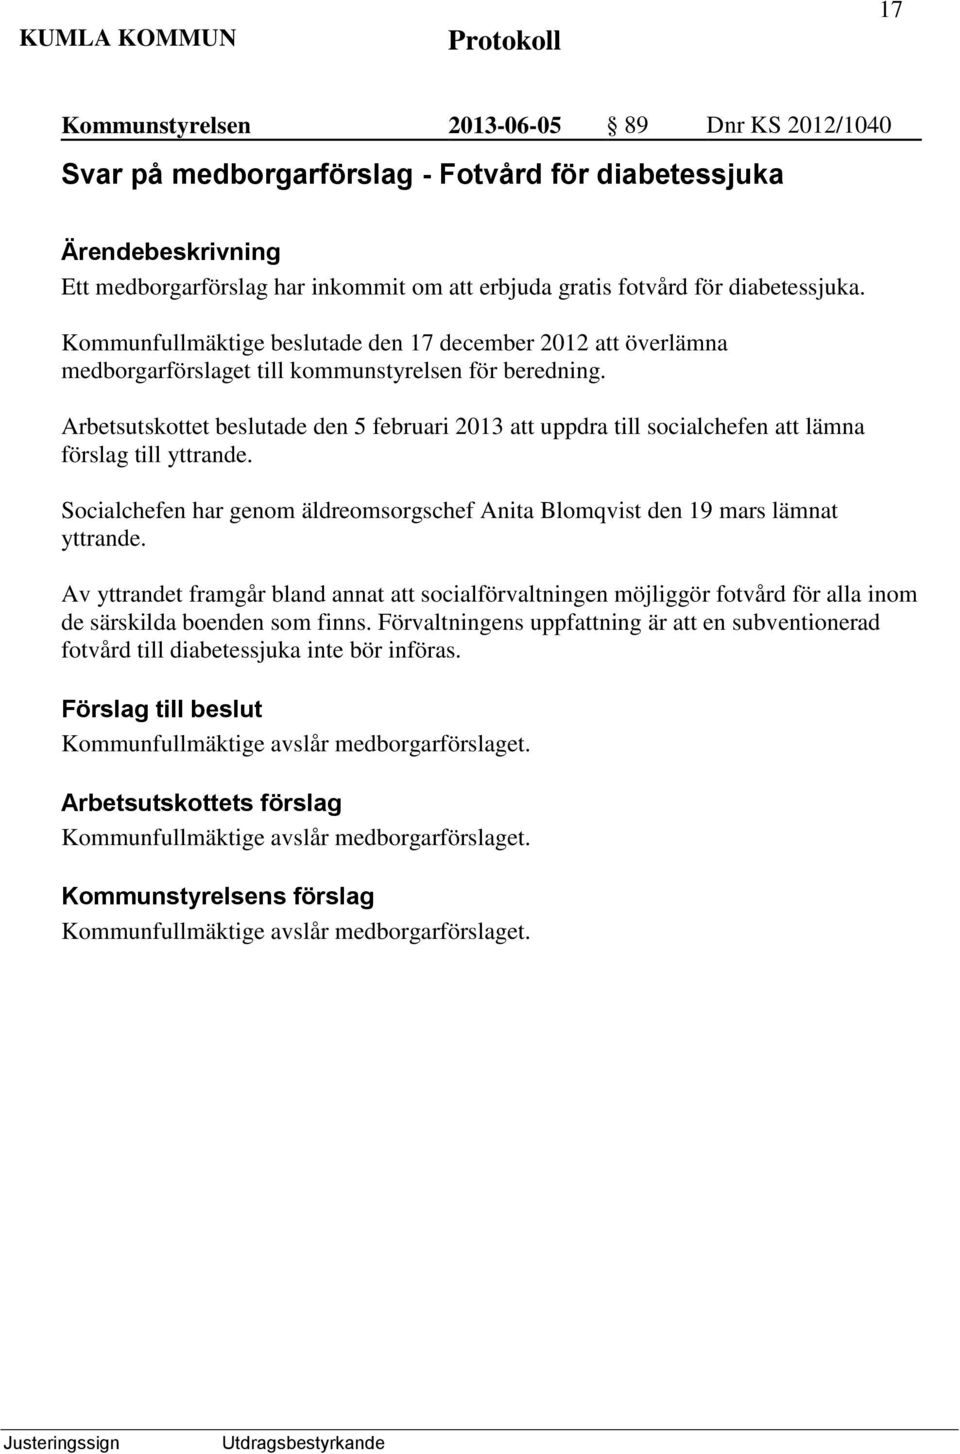 Arbetsutskottet beslutade den 5 februari 2013 att uppdra till socialchefen att lämna förslag till yttrande. Socialchefen har genom äldreomsorgschef Anita Blomqvist den 19 mars lämnat yttrande.